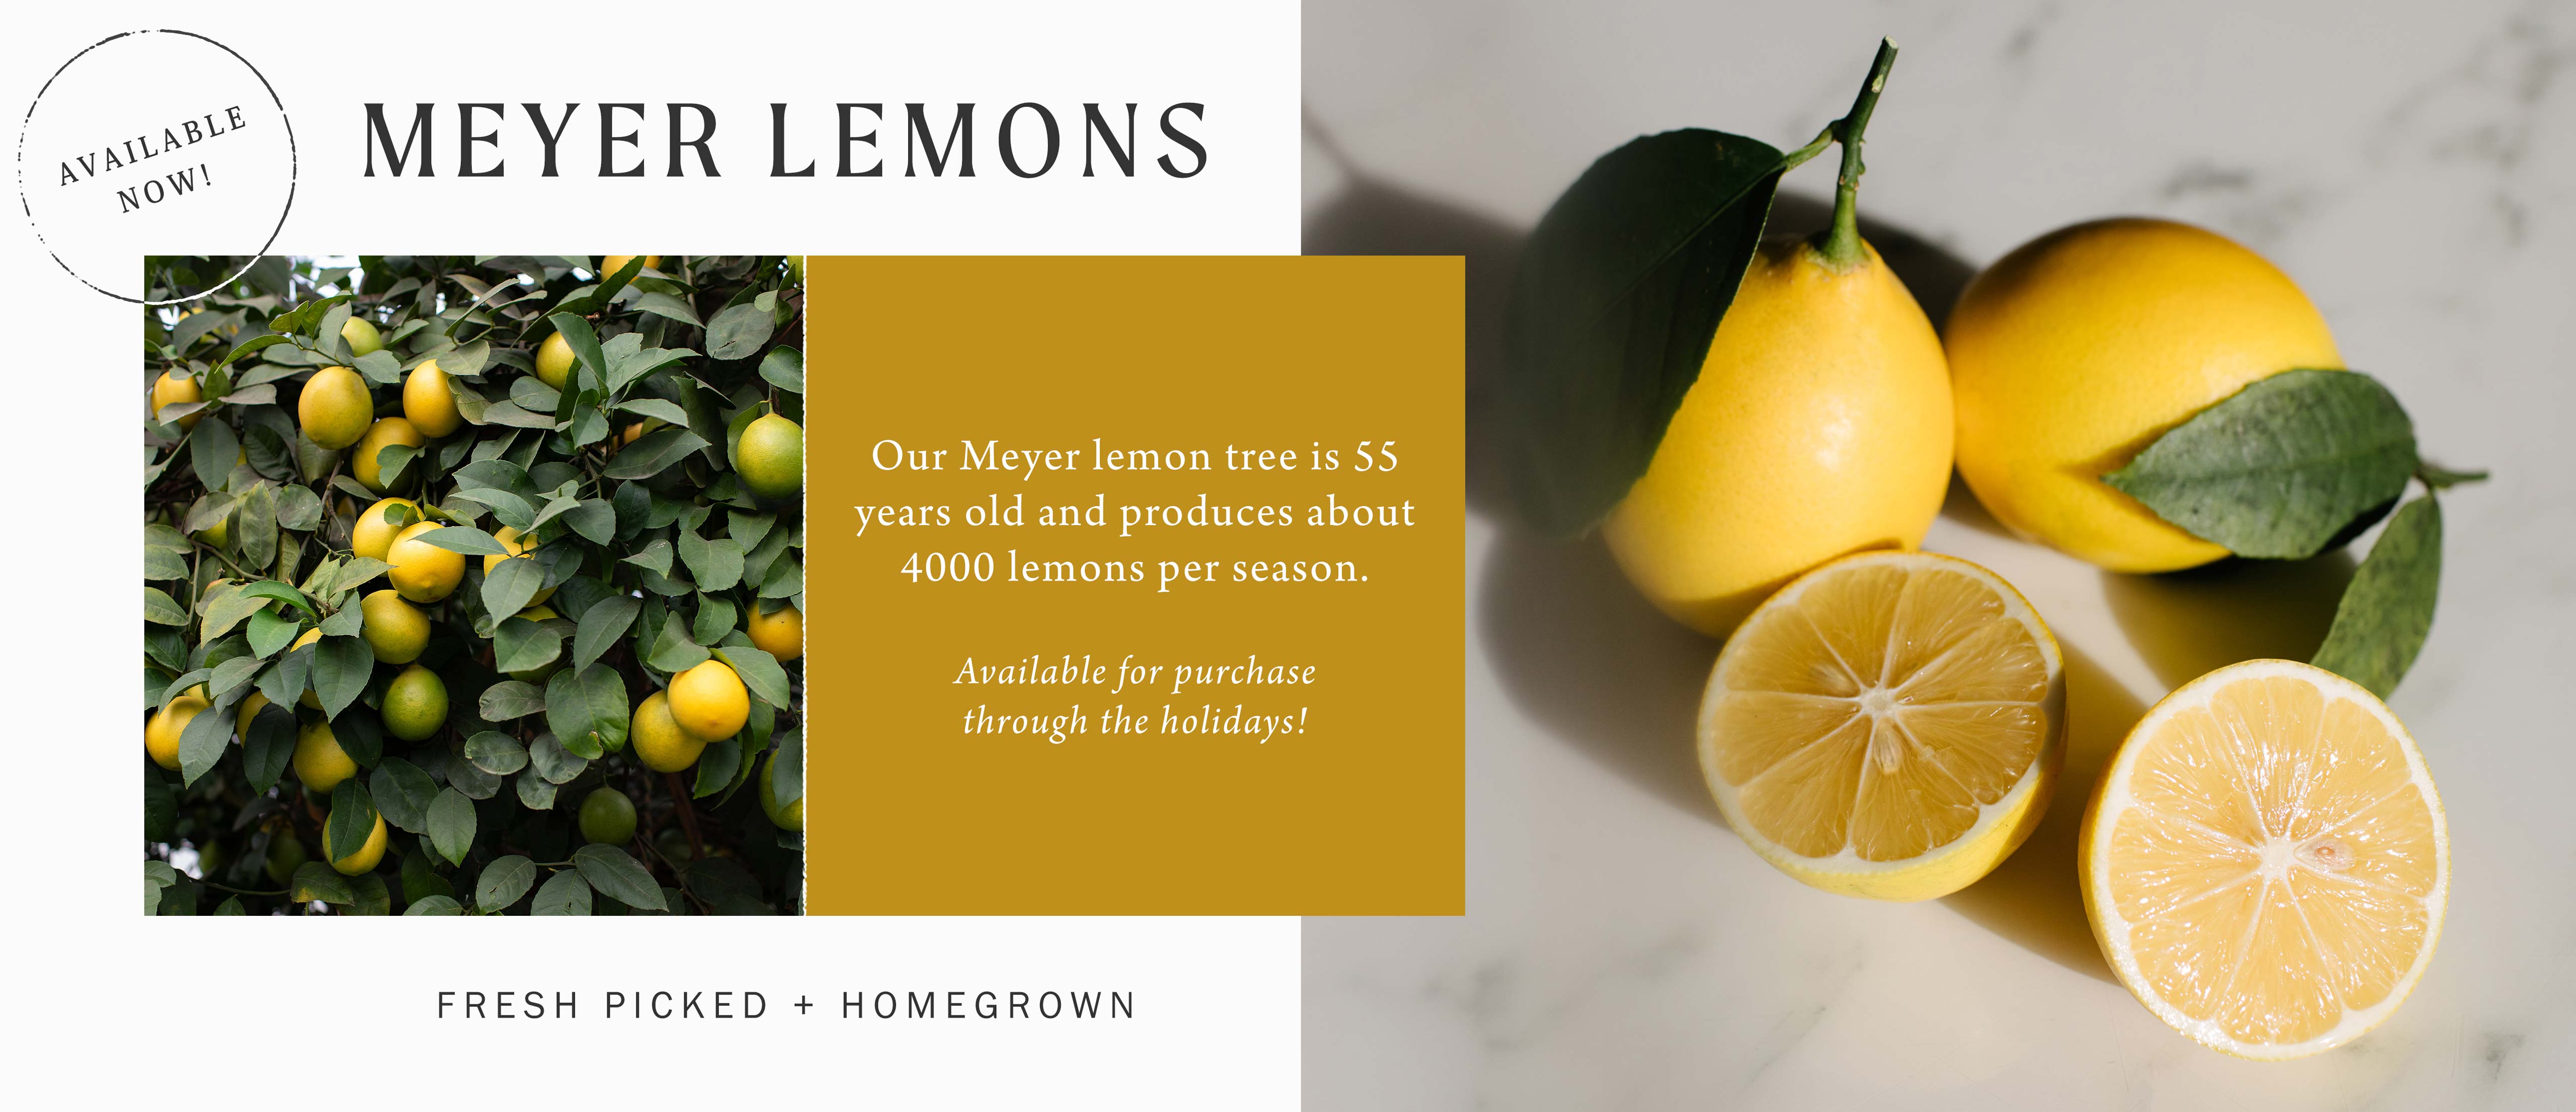 Meyer Lemons at Hoen's Garden Center